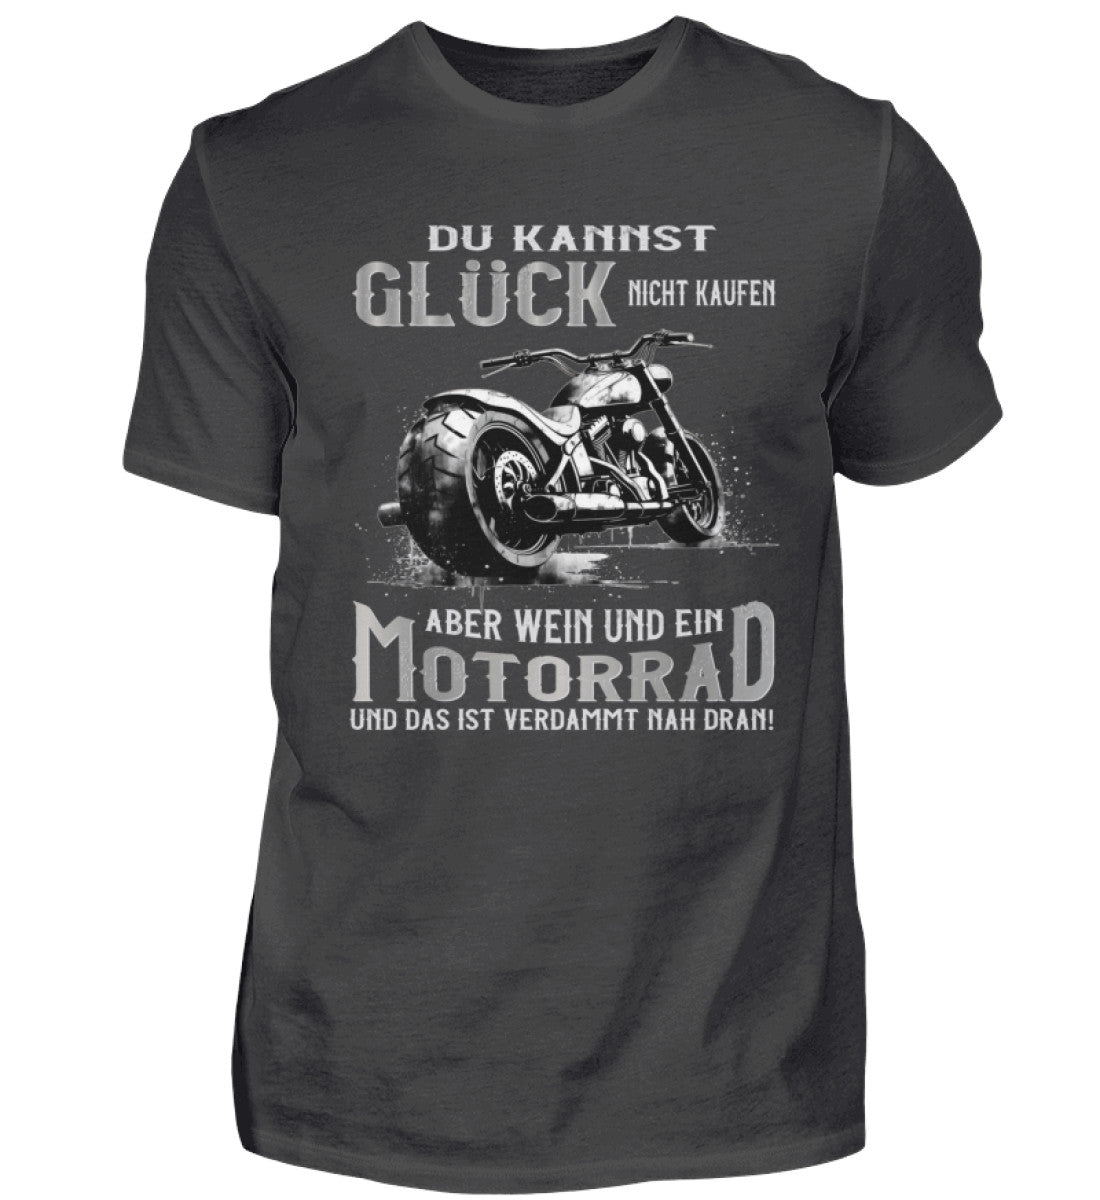 Ein Biker T-Shirt für Motorradfahrer von Wingbikers mit dem Aufdruck, Du kannst Glück nicht kaufen, aber Wein und ein Motorrad und das ist verdammt nah dran! - in dunkelgrau.